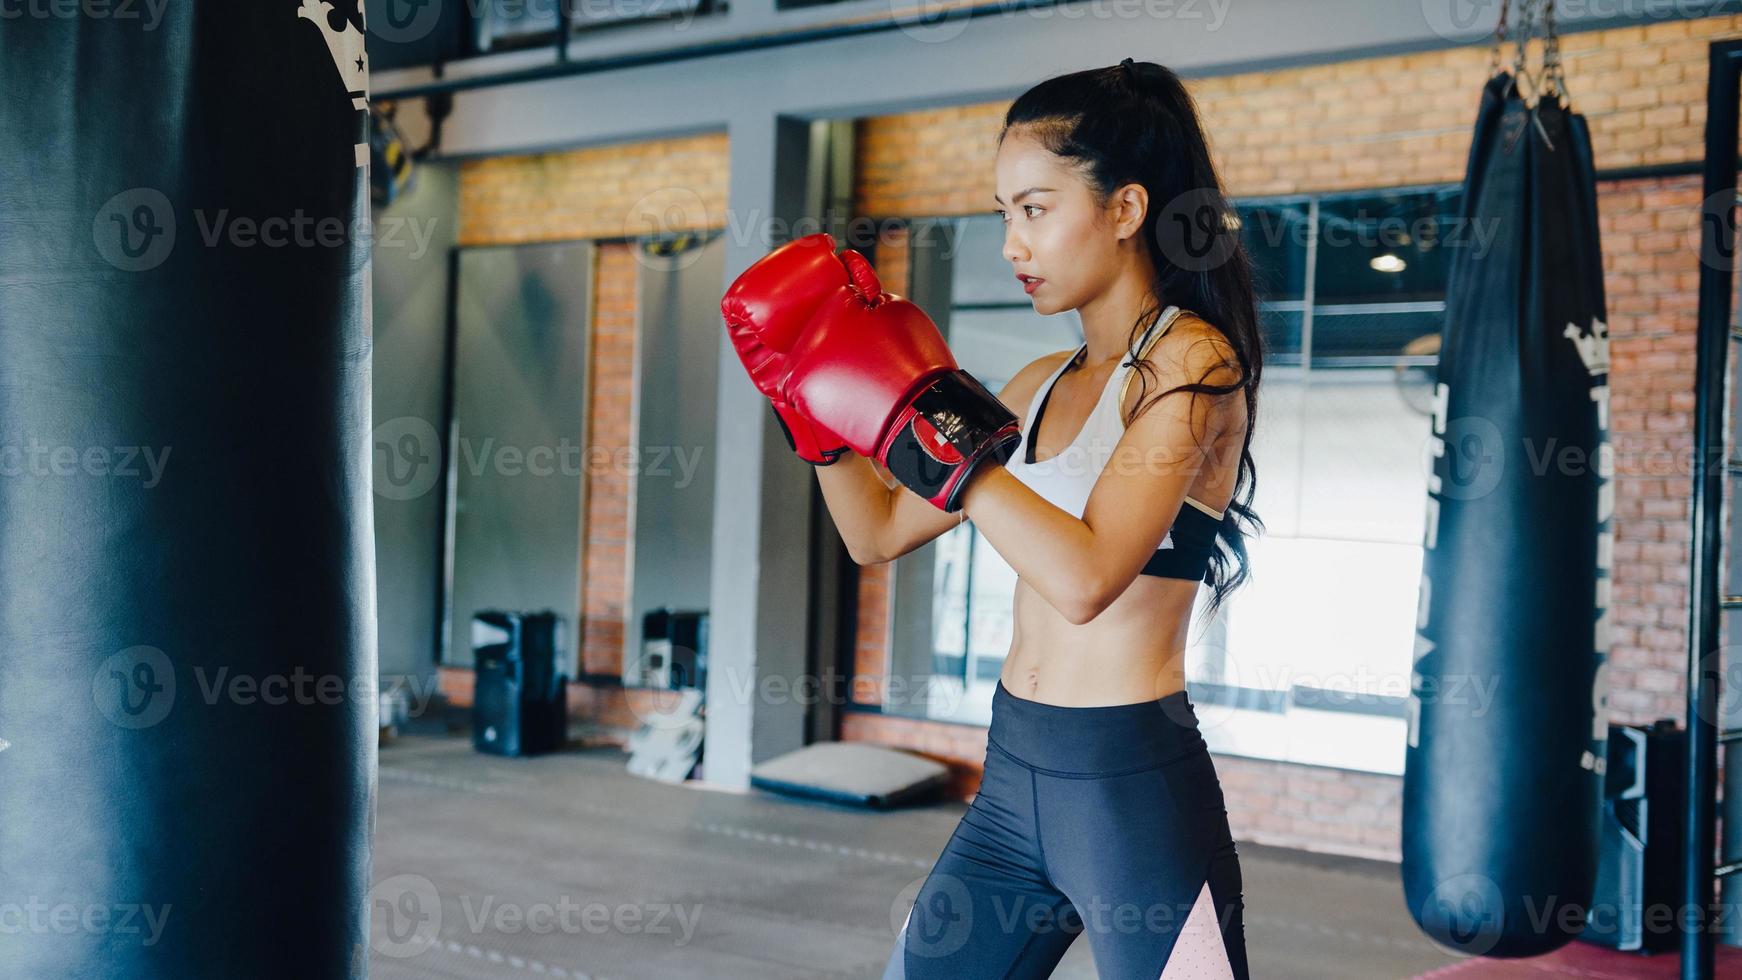 giovane donna asiatica kickboxing esercizio allenamento sacco da boxe combattente femmina dura pratica boxe in palestra lezione di fitness. attività ricreativa sportiva, allenamento funzionale, concetto di stile di vita sano. foto